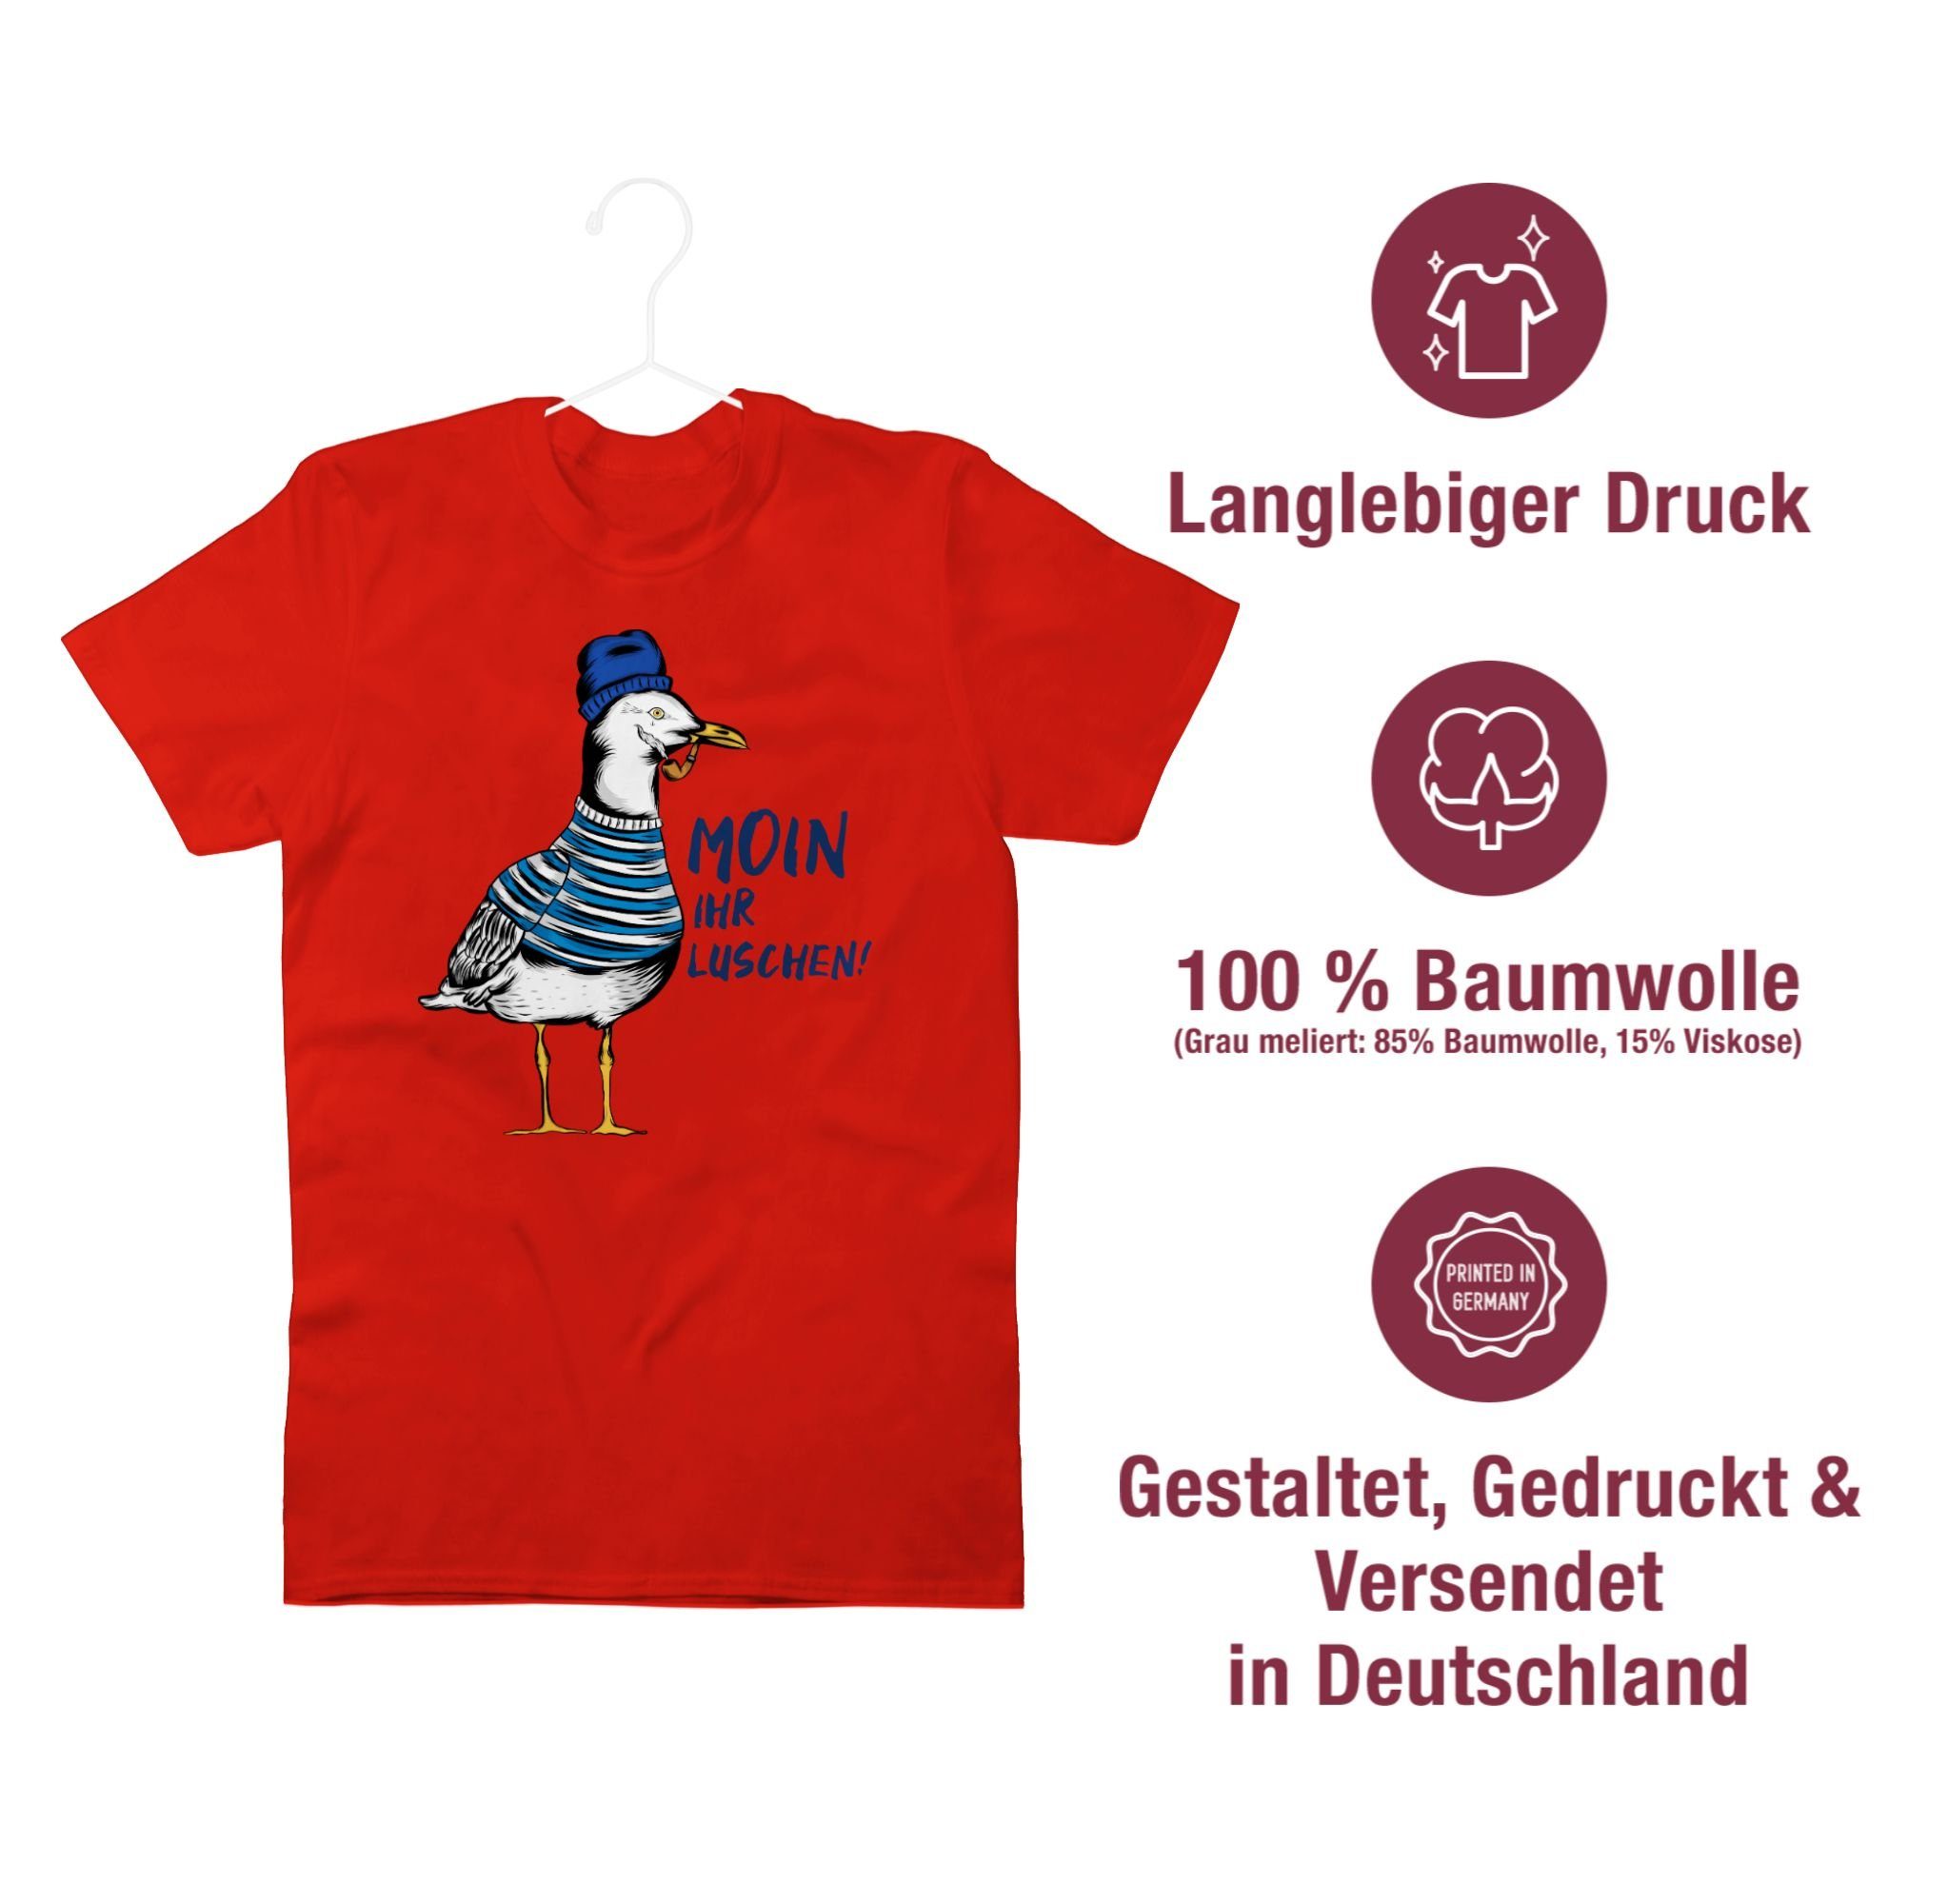 T-Shirt 2 Rot - Möwe Shirtracer Statement Coole Luschen Schwarz - Sprüche Moin ihr